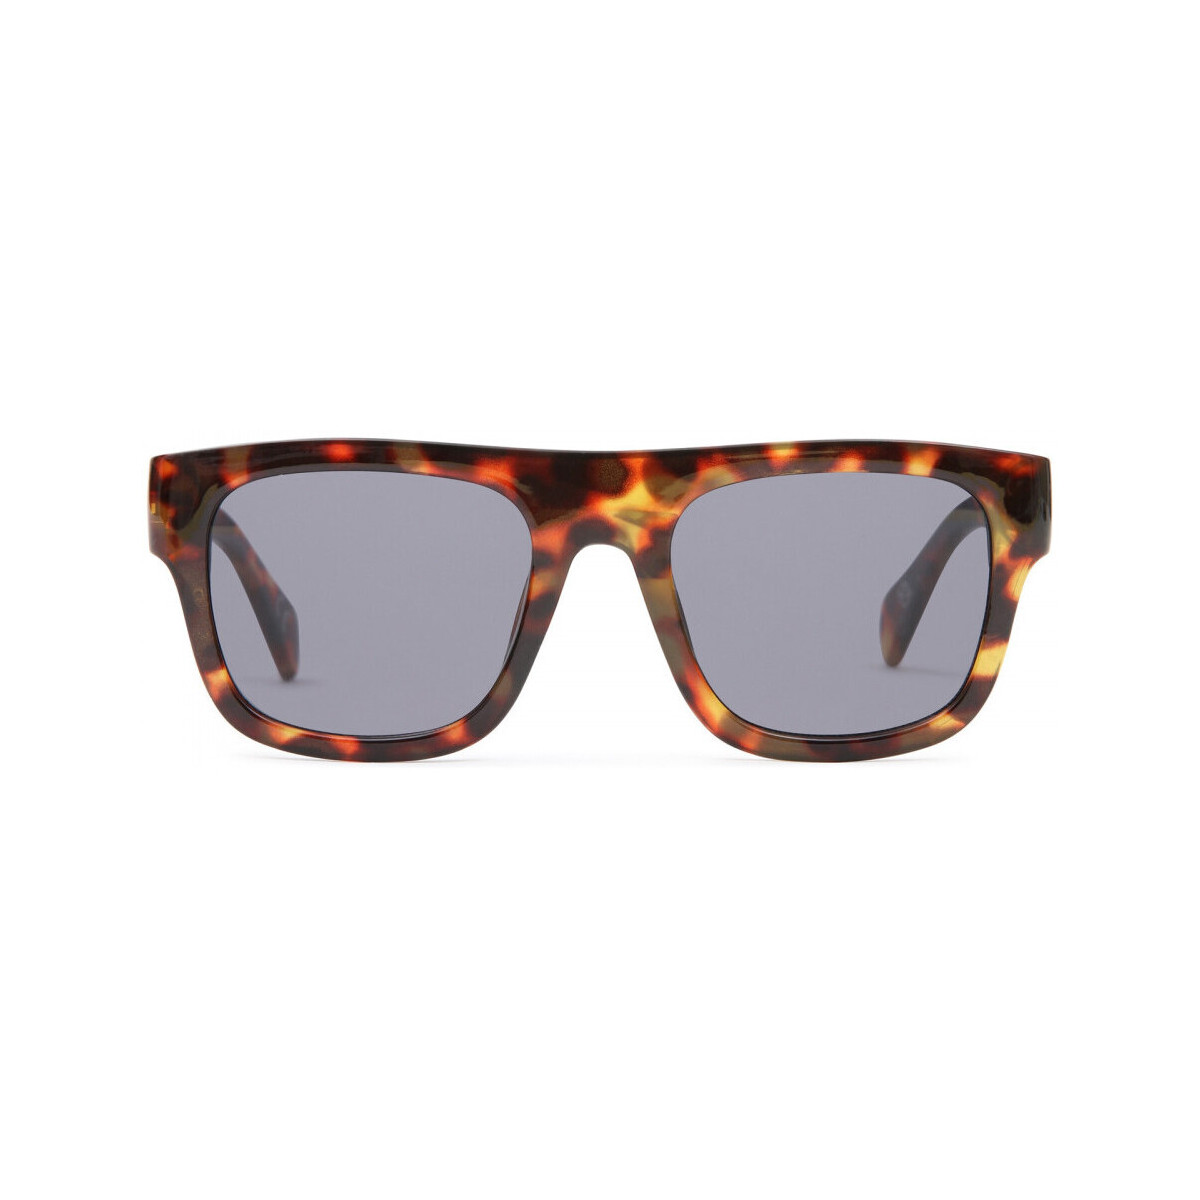 Hodinky & Bižuterie Muži sluneční brýle Vans Squared off shades Hnědá